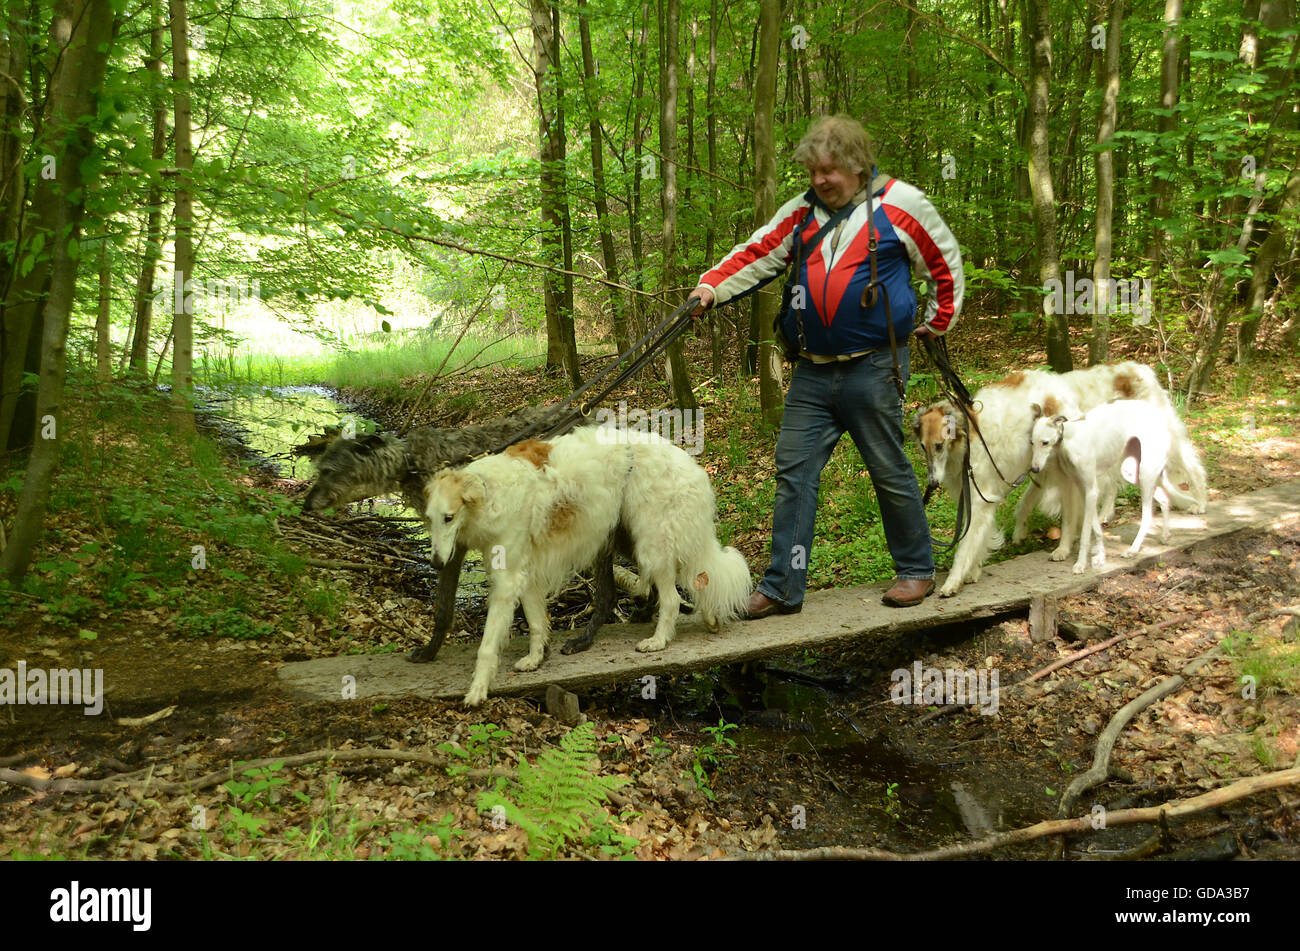 Personne avec 5 chiens traverse un petit pont sur un ruisseau. Le pont va gérer l'énorme charge ? Banque D'Images